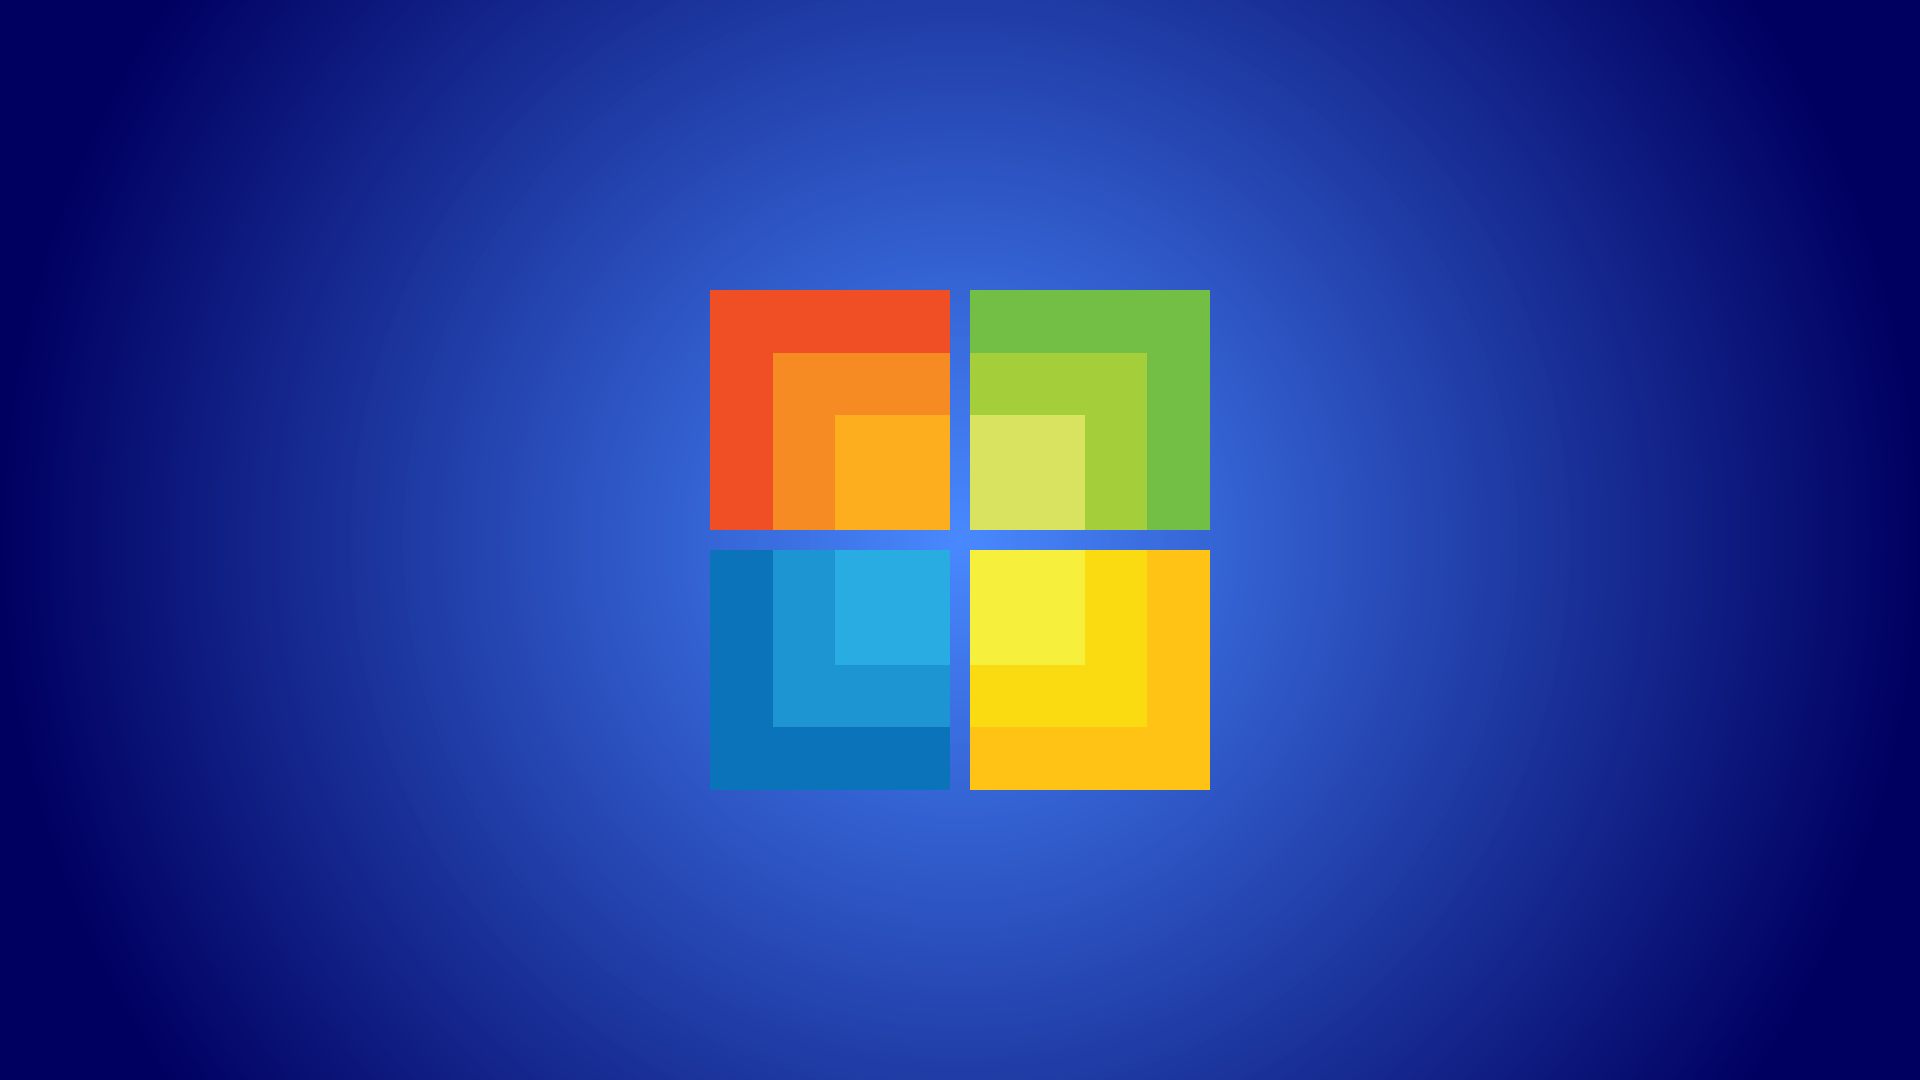 Microsoft Desktop Wallpaper In HD